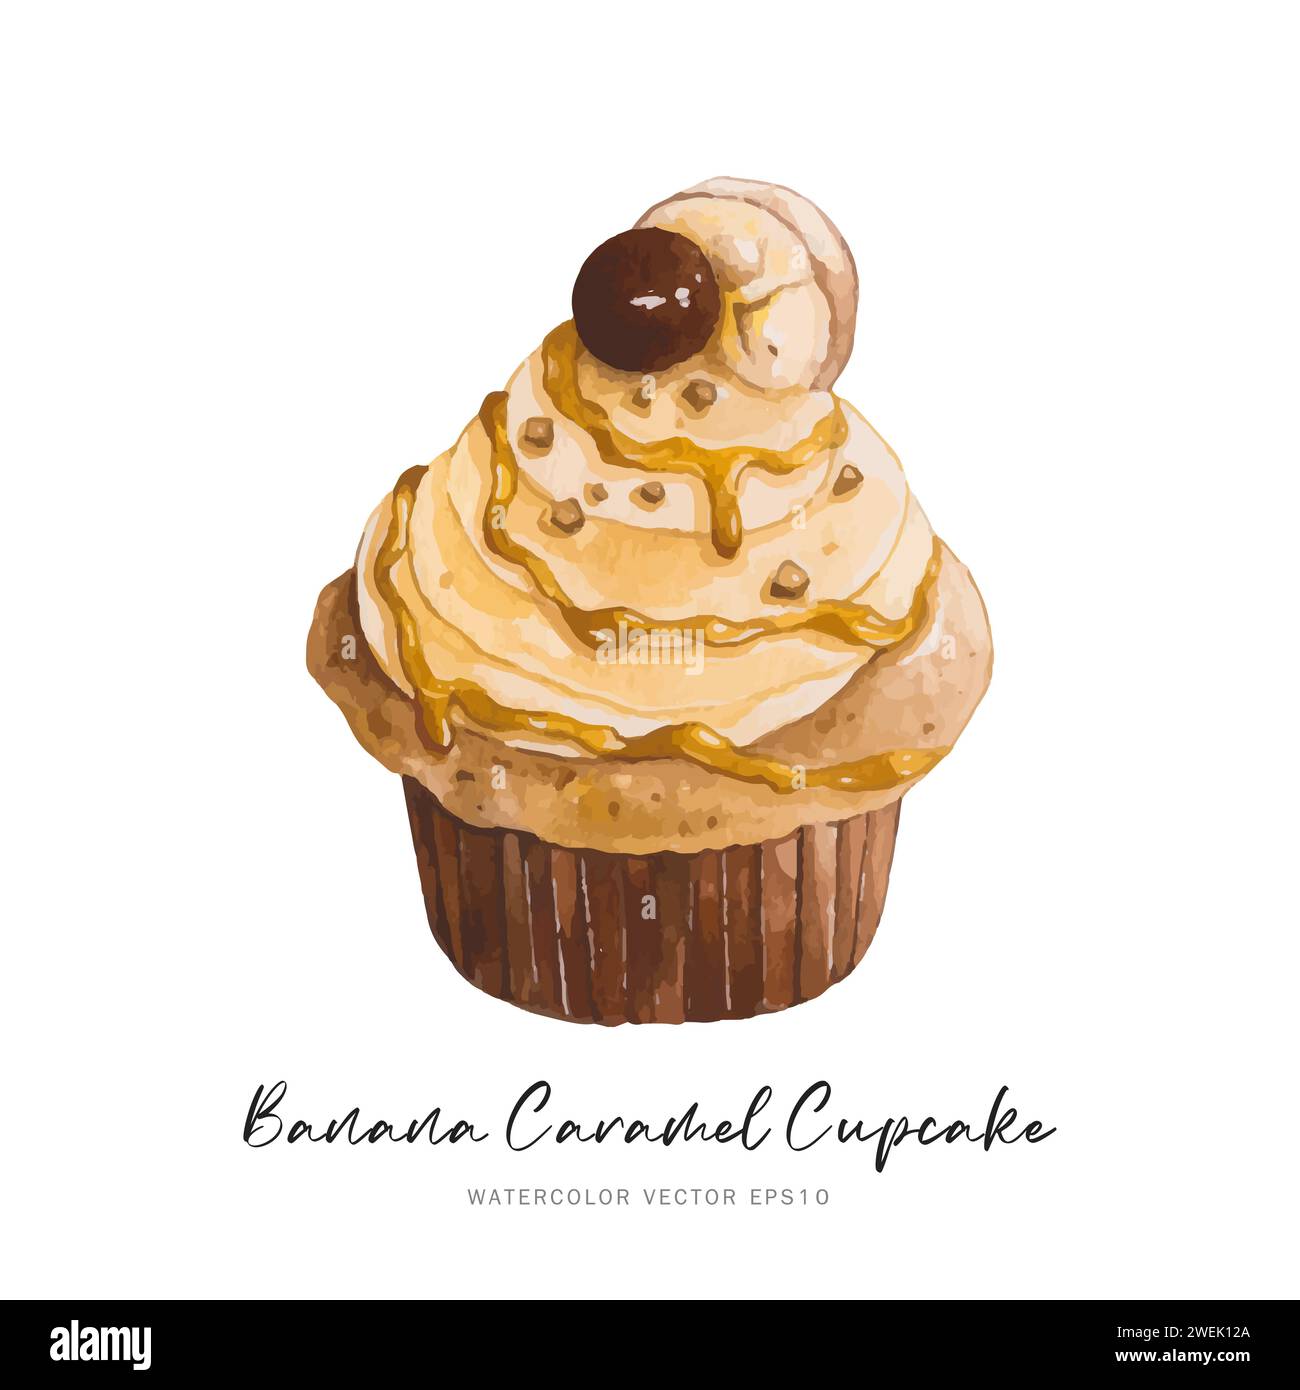 Dessert cupcake caramel banane, conception vectorielle de peinture alimentaire aquarelle isolée sur fond blanc Illustration de Vecteur